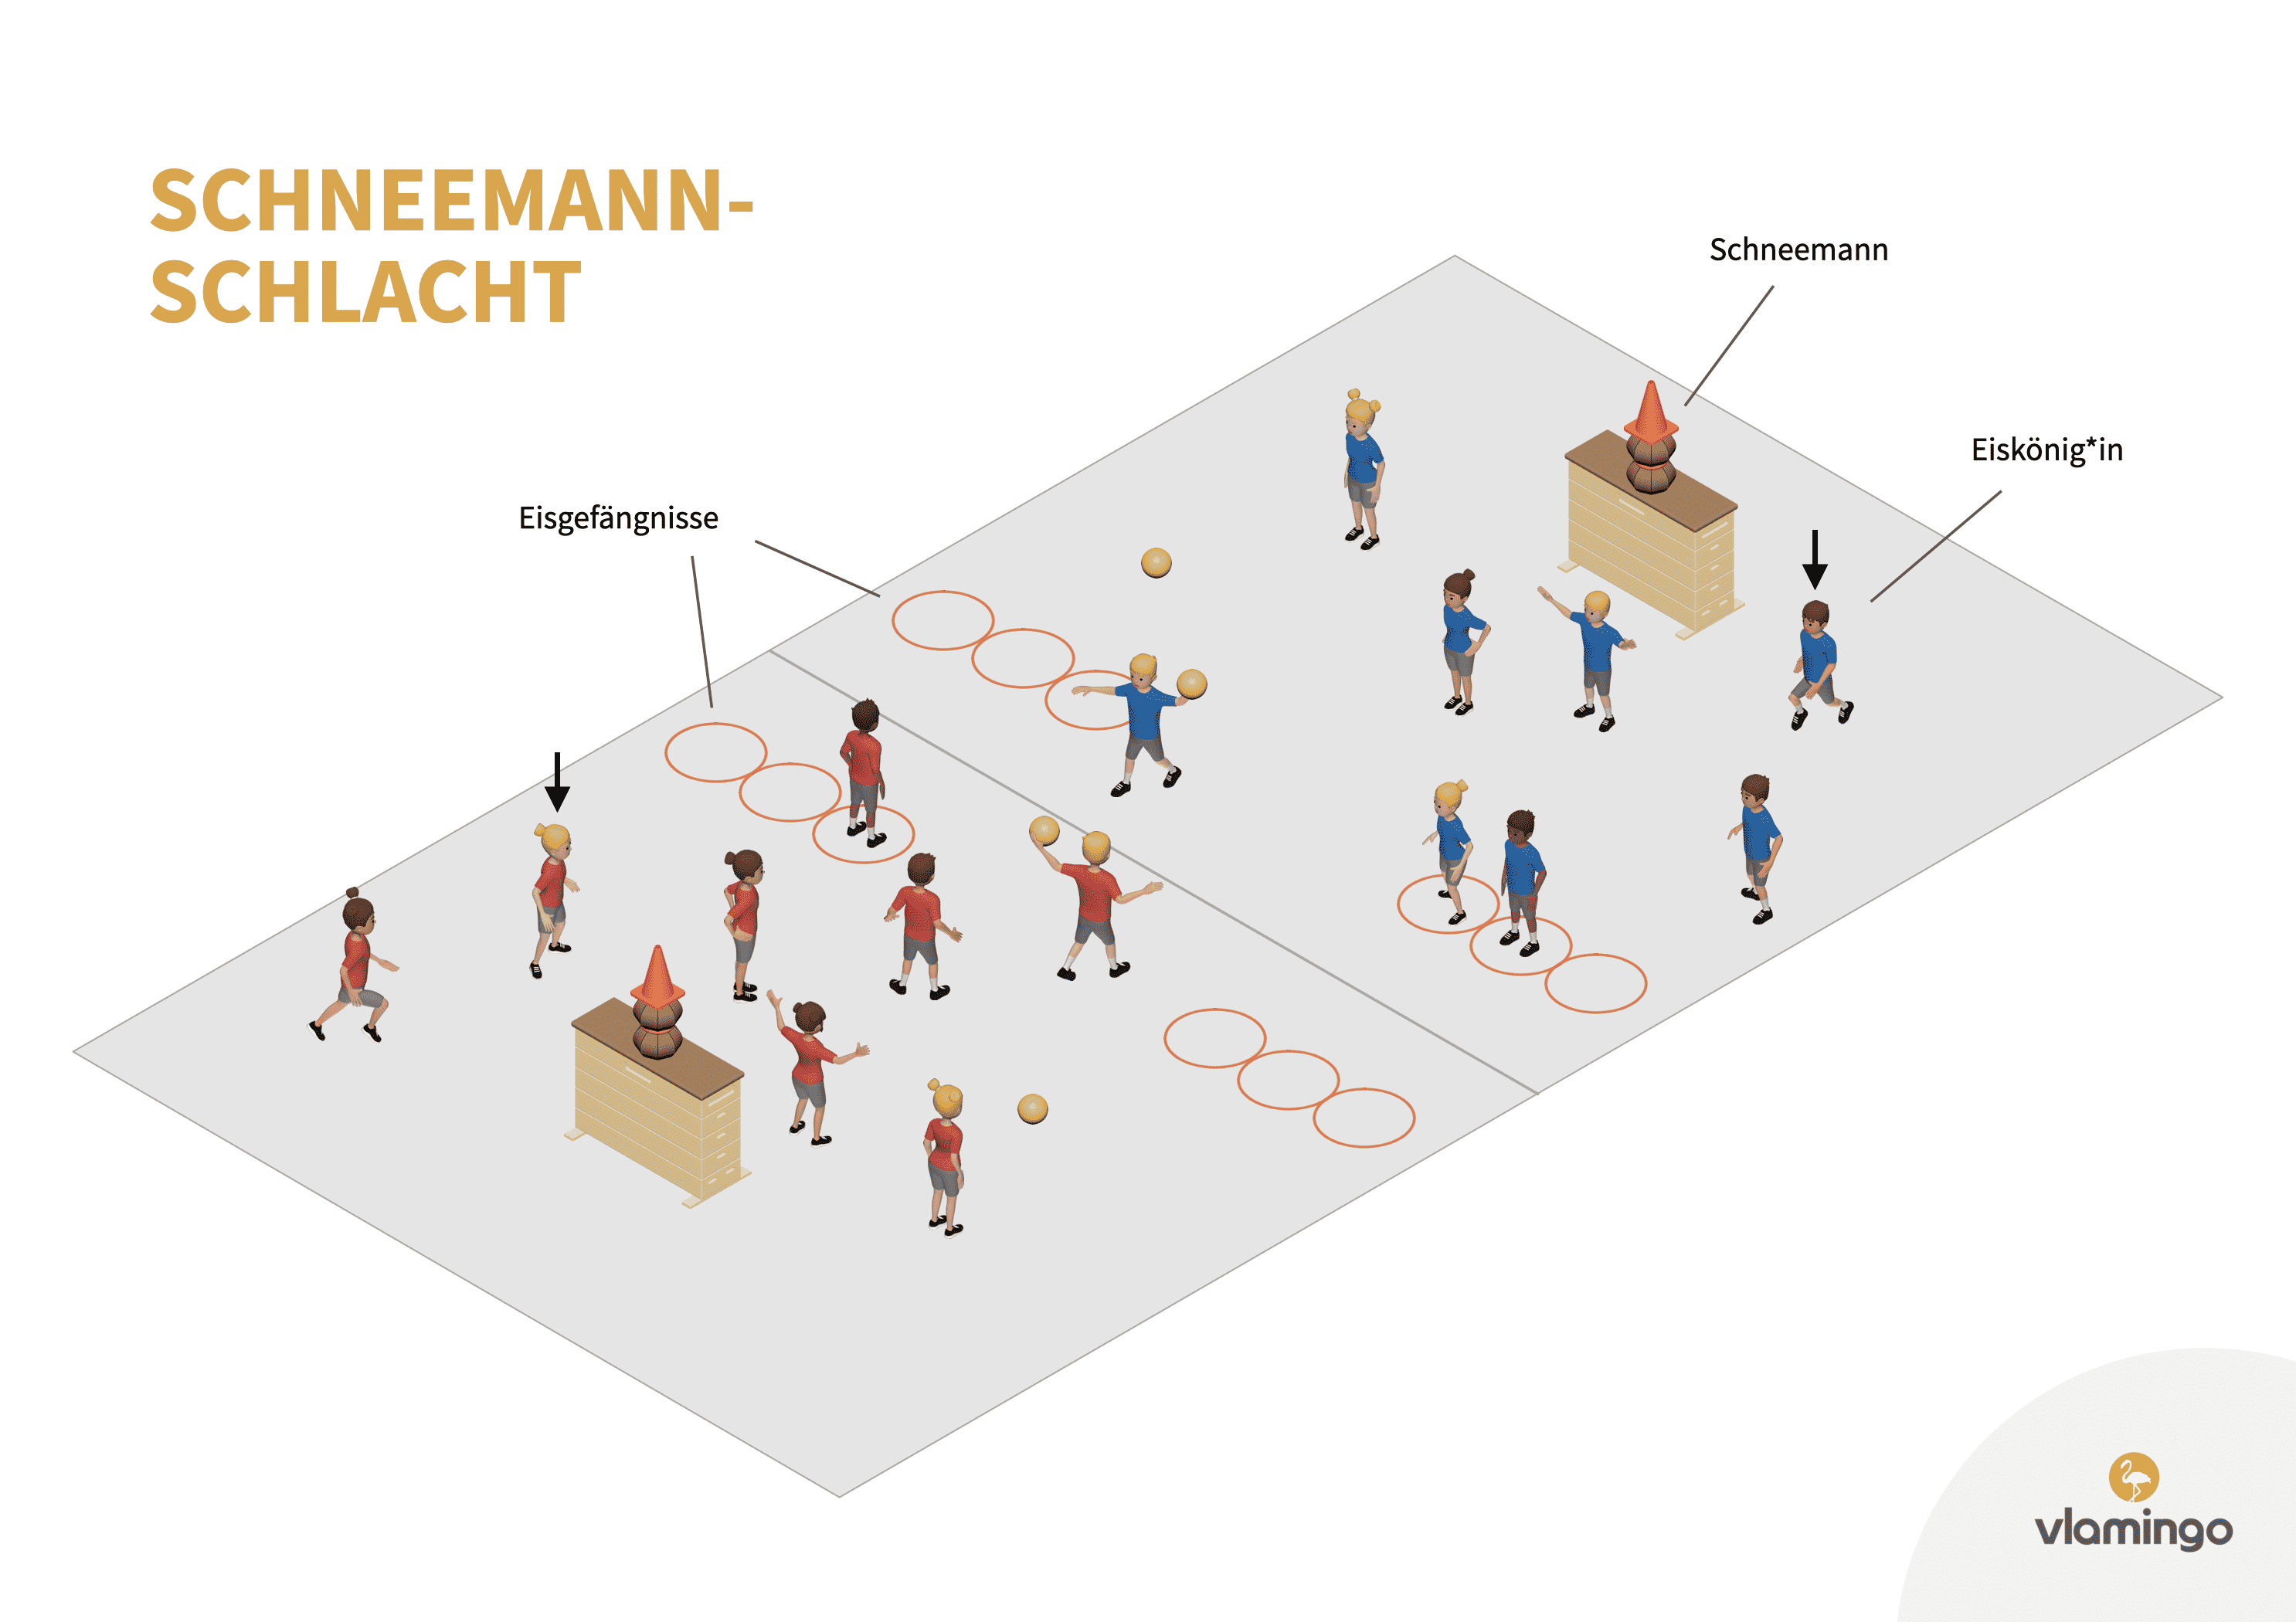 Schneemann-Schlacht - Spielidee